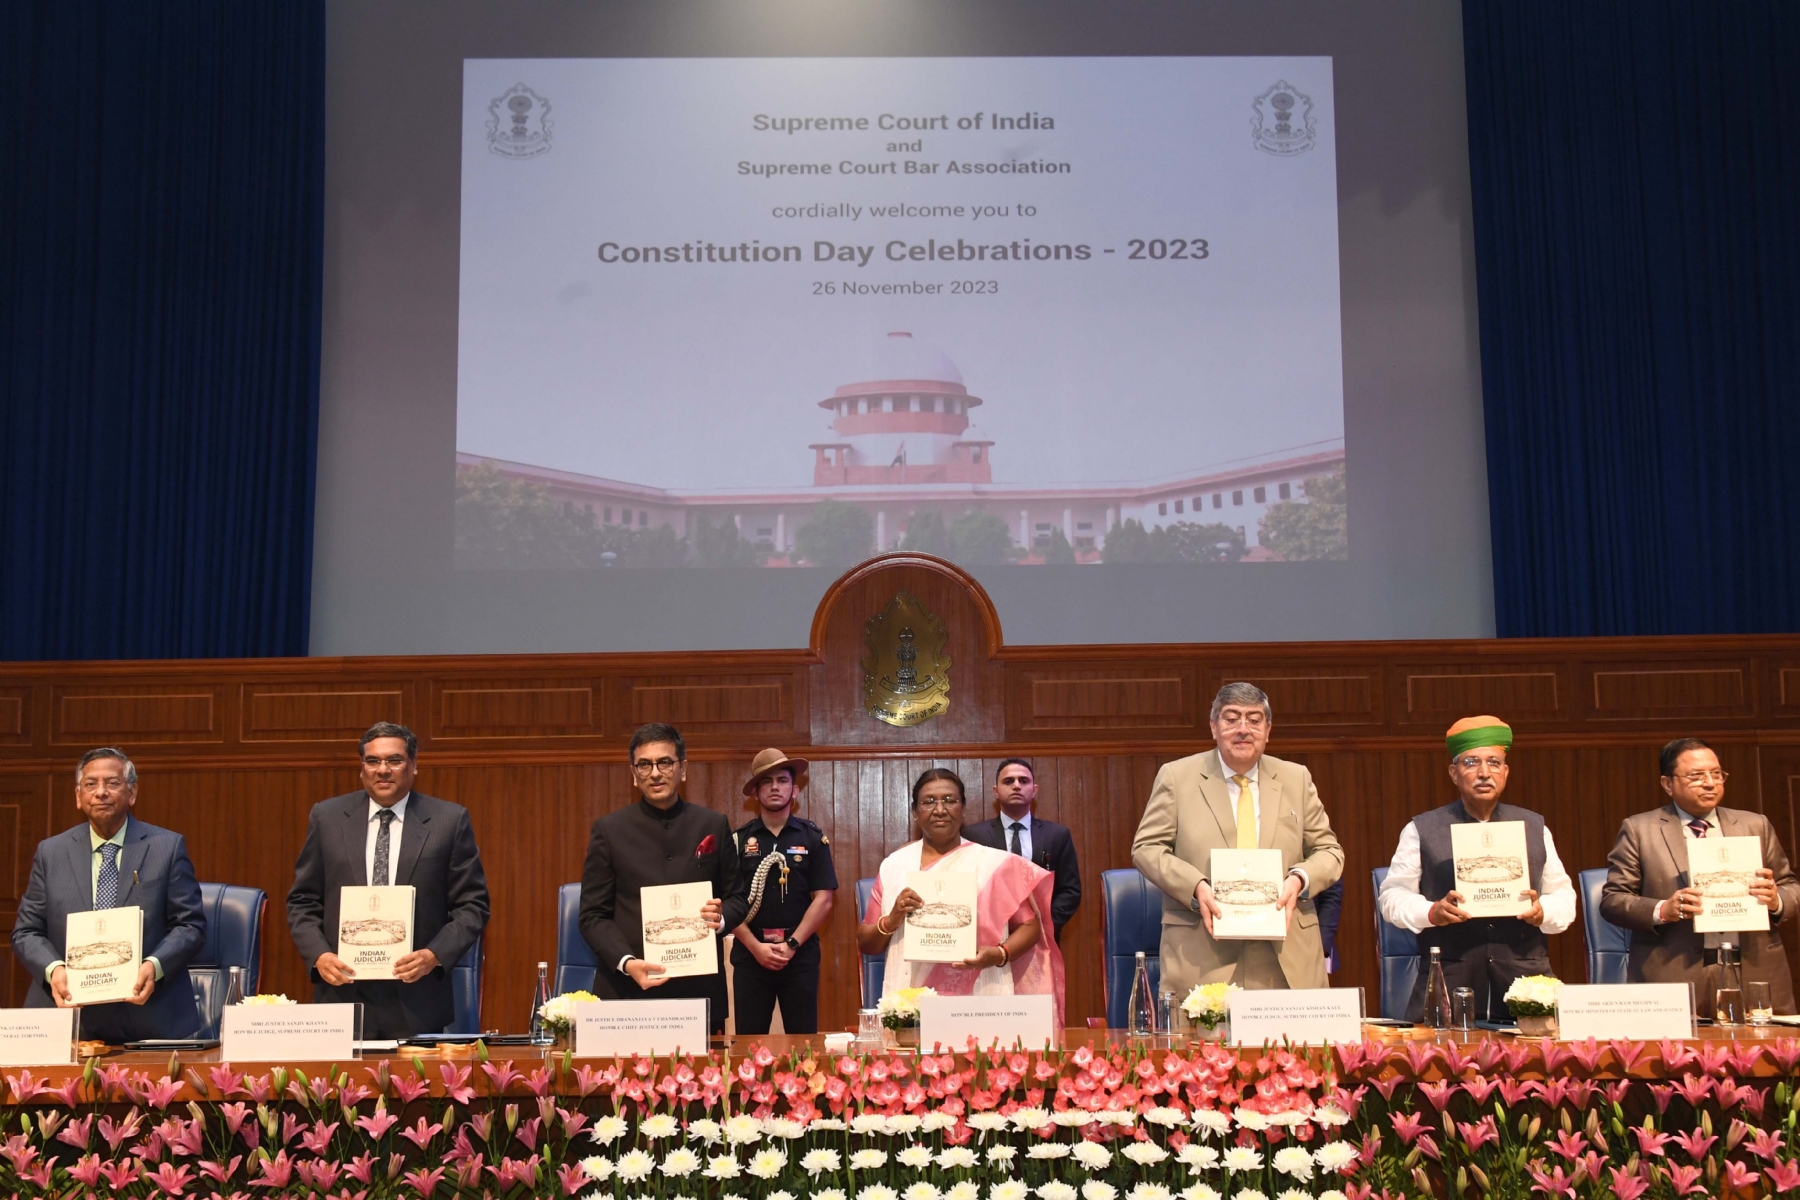 नई दिल्ली में राष्ट्रपति श्रीमती द्रौपदी मुर्मू  और मुख्य न्यायाधीश जस्टिस डी वाई चंद्रचूड़ ने भारत के सर्वोच्च न्यायालय द्वारा आयोजित संविधान दिवस समारोह में भागलिया और लोगों को संबोधित किया।